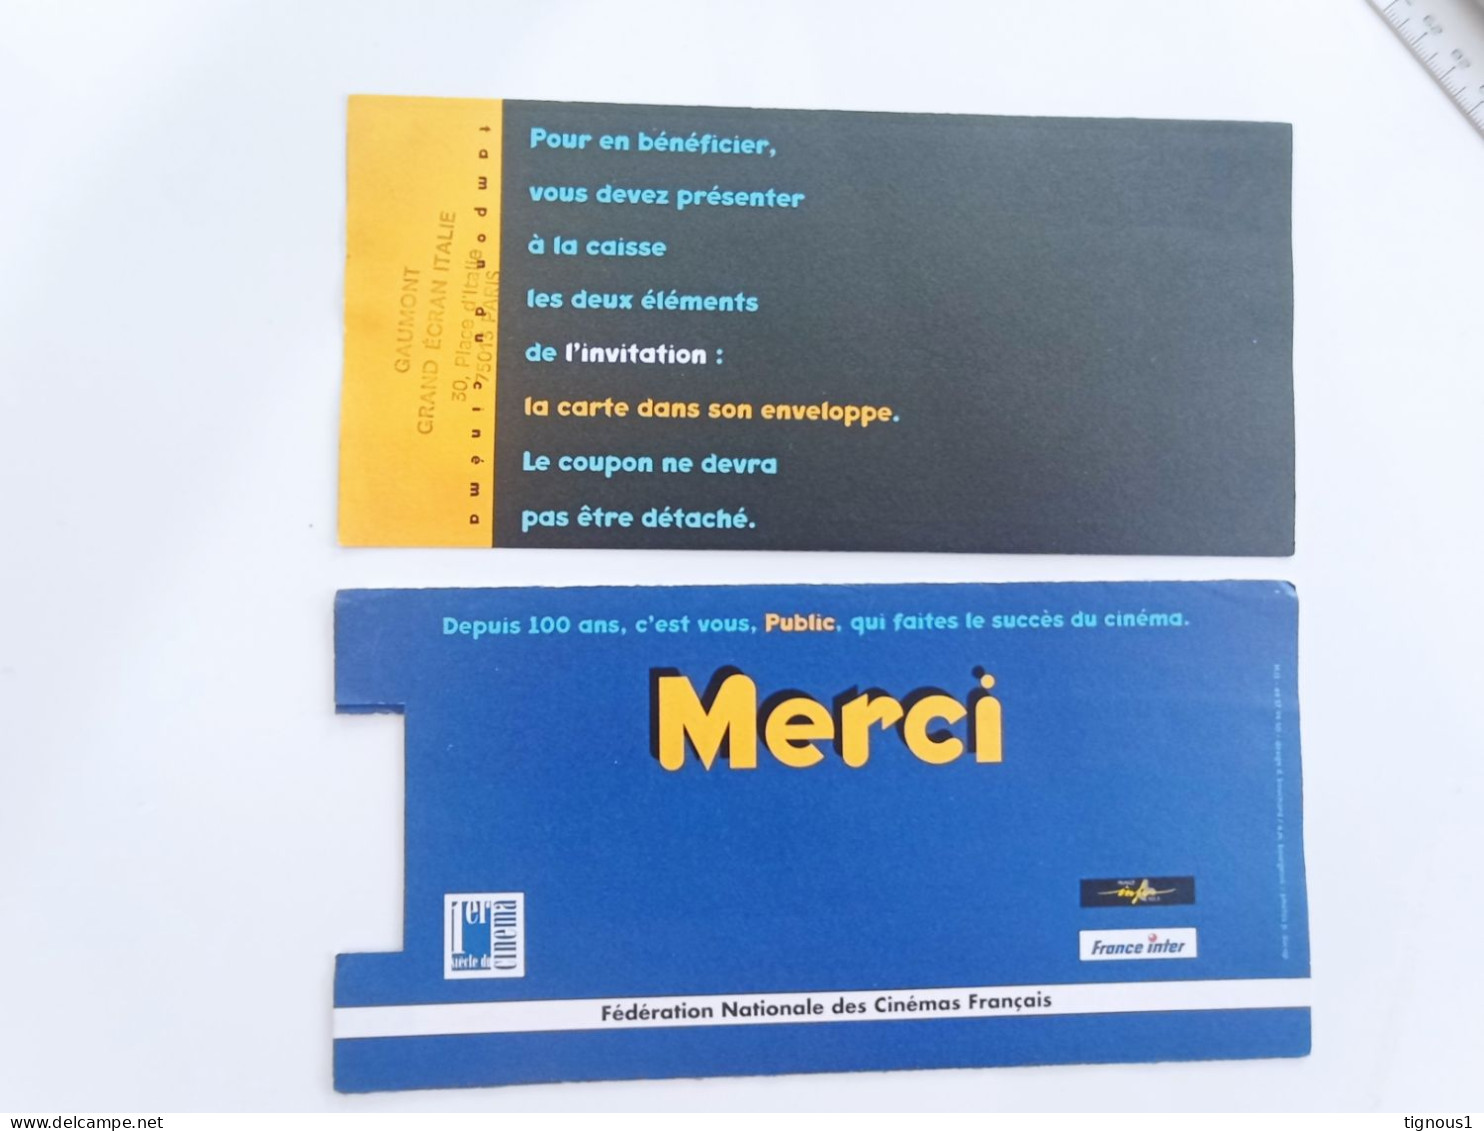 Ticket Du Siècle 1995 Pathé Grand écran Italie COMPLET - COLLECTOR - Publicité Cinématographique